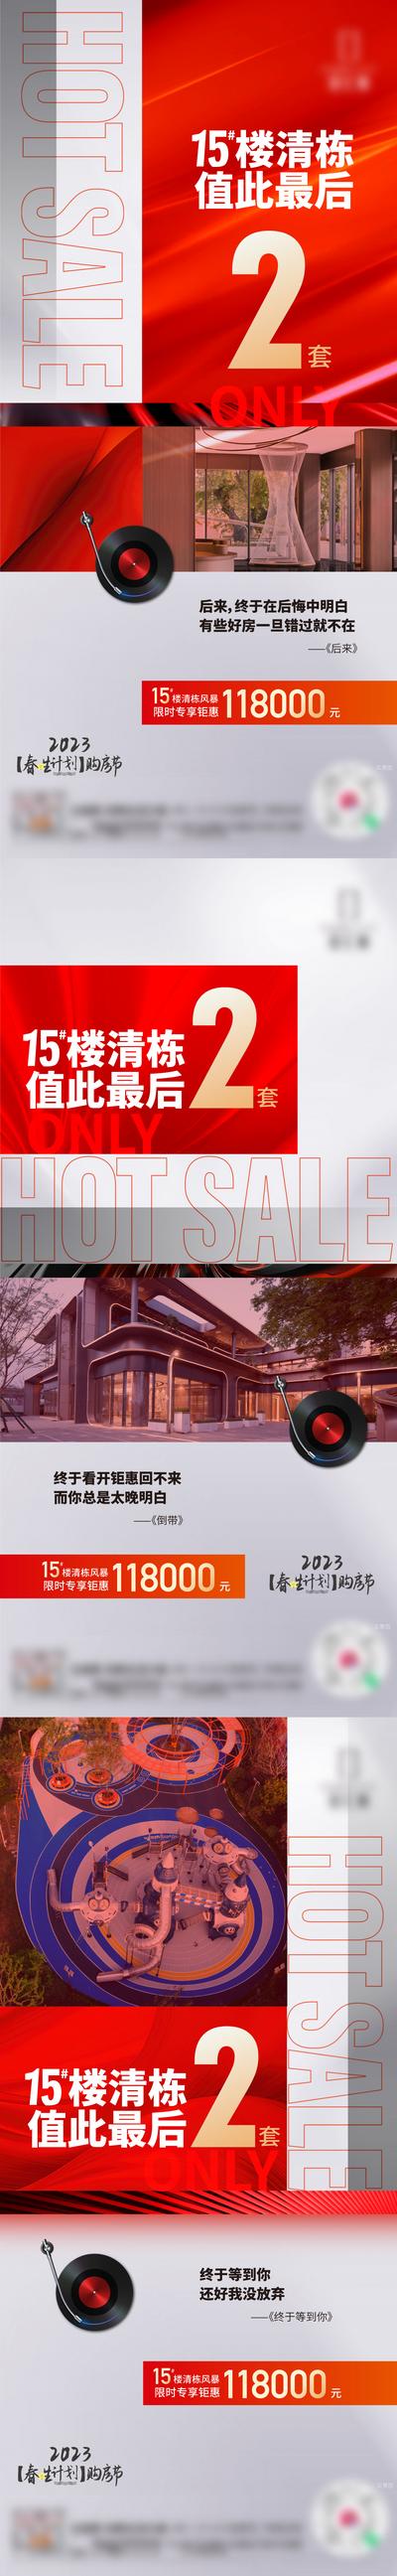 南门网 广告 海报 地产 清栋 特价房 热销 系列